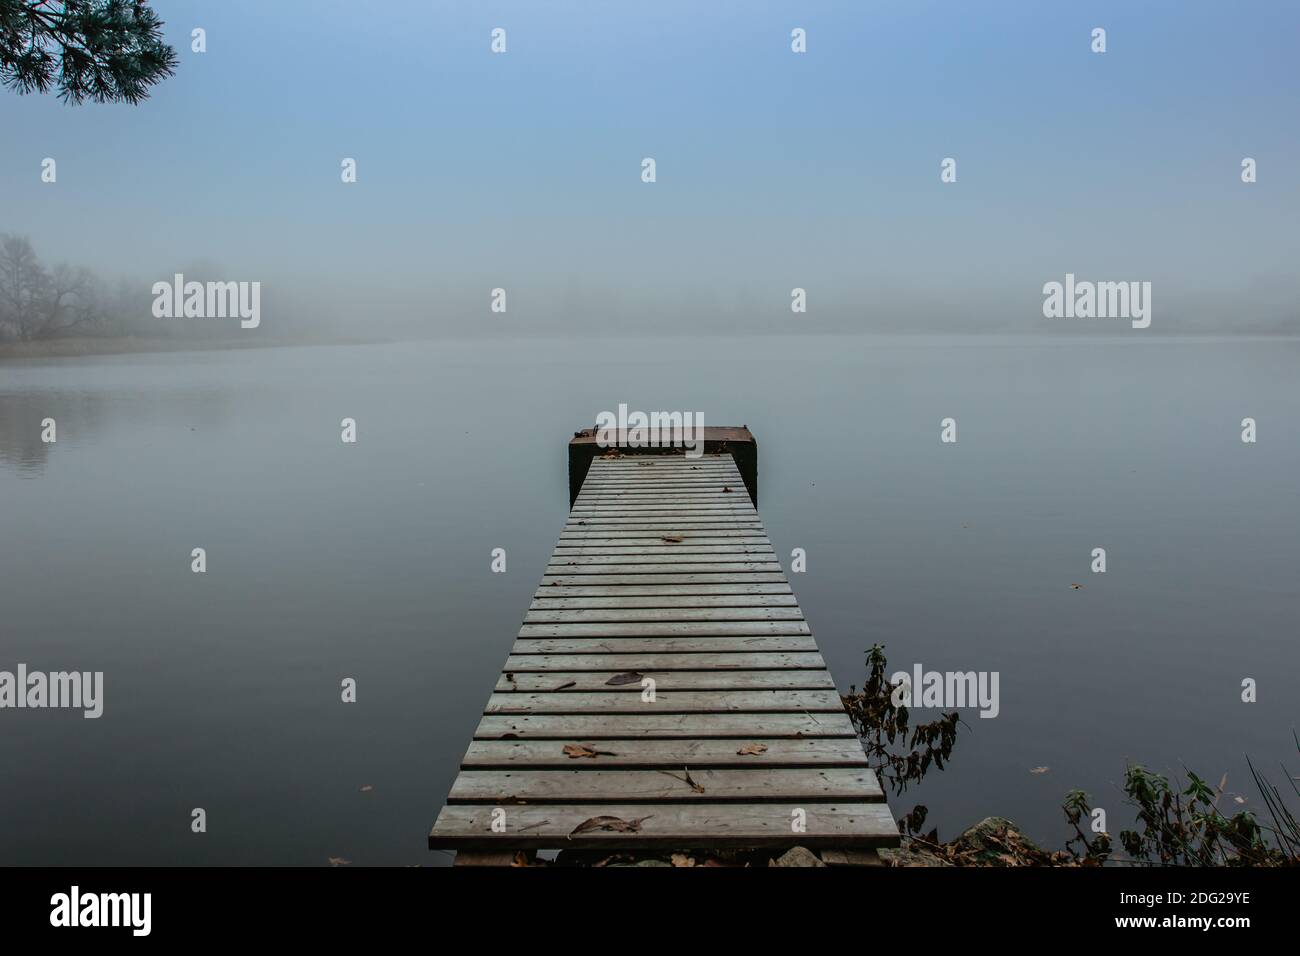 Geheimnisvoller Morgen am See. Neblige herbstliche Mystery Atmosphäre. Holzsteg auf dem Teich.Magische Stimmung. Nebliger Herbsttag. Sprachloses Hotel. Entspannende Meditation Stockfoto